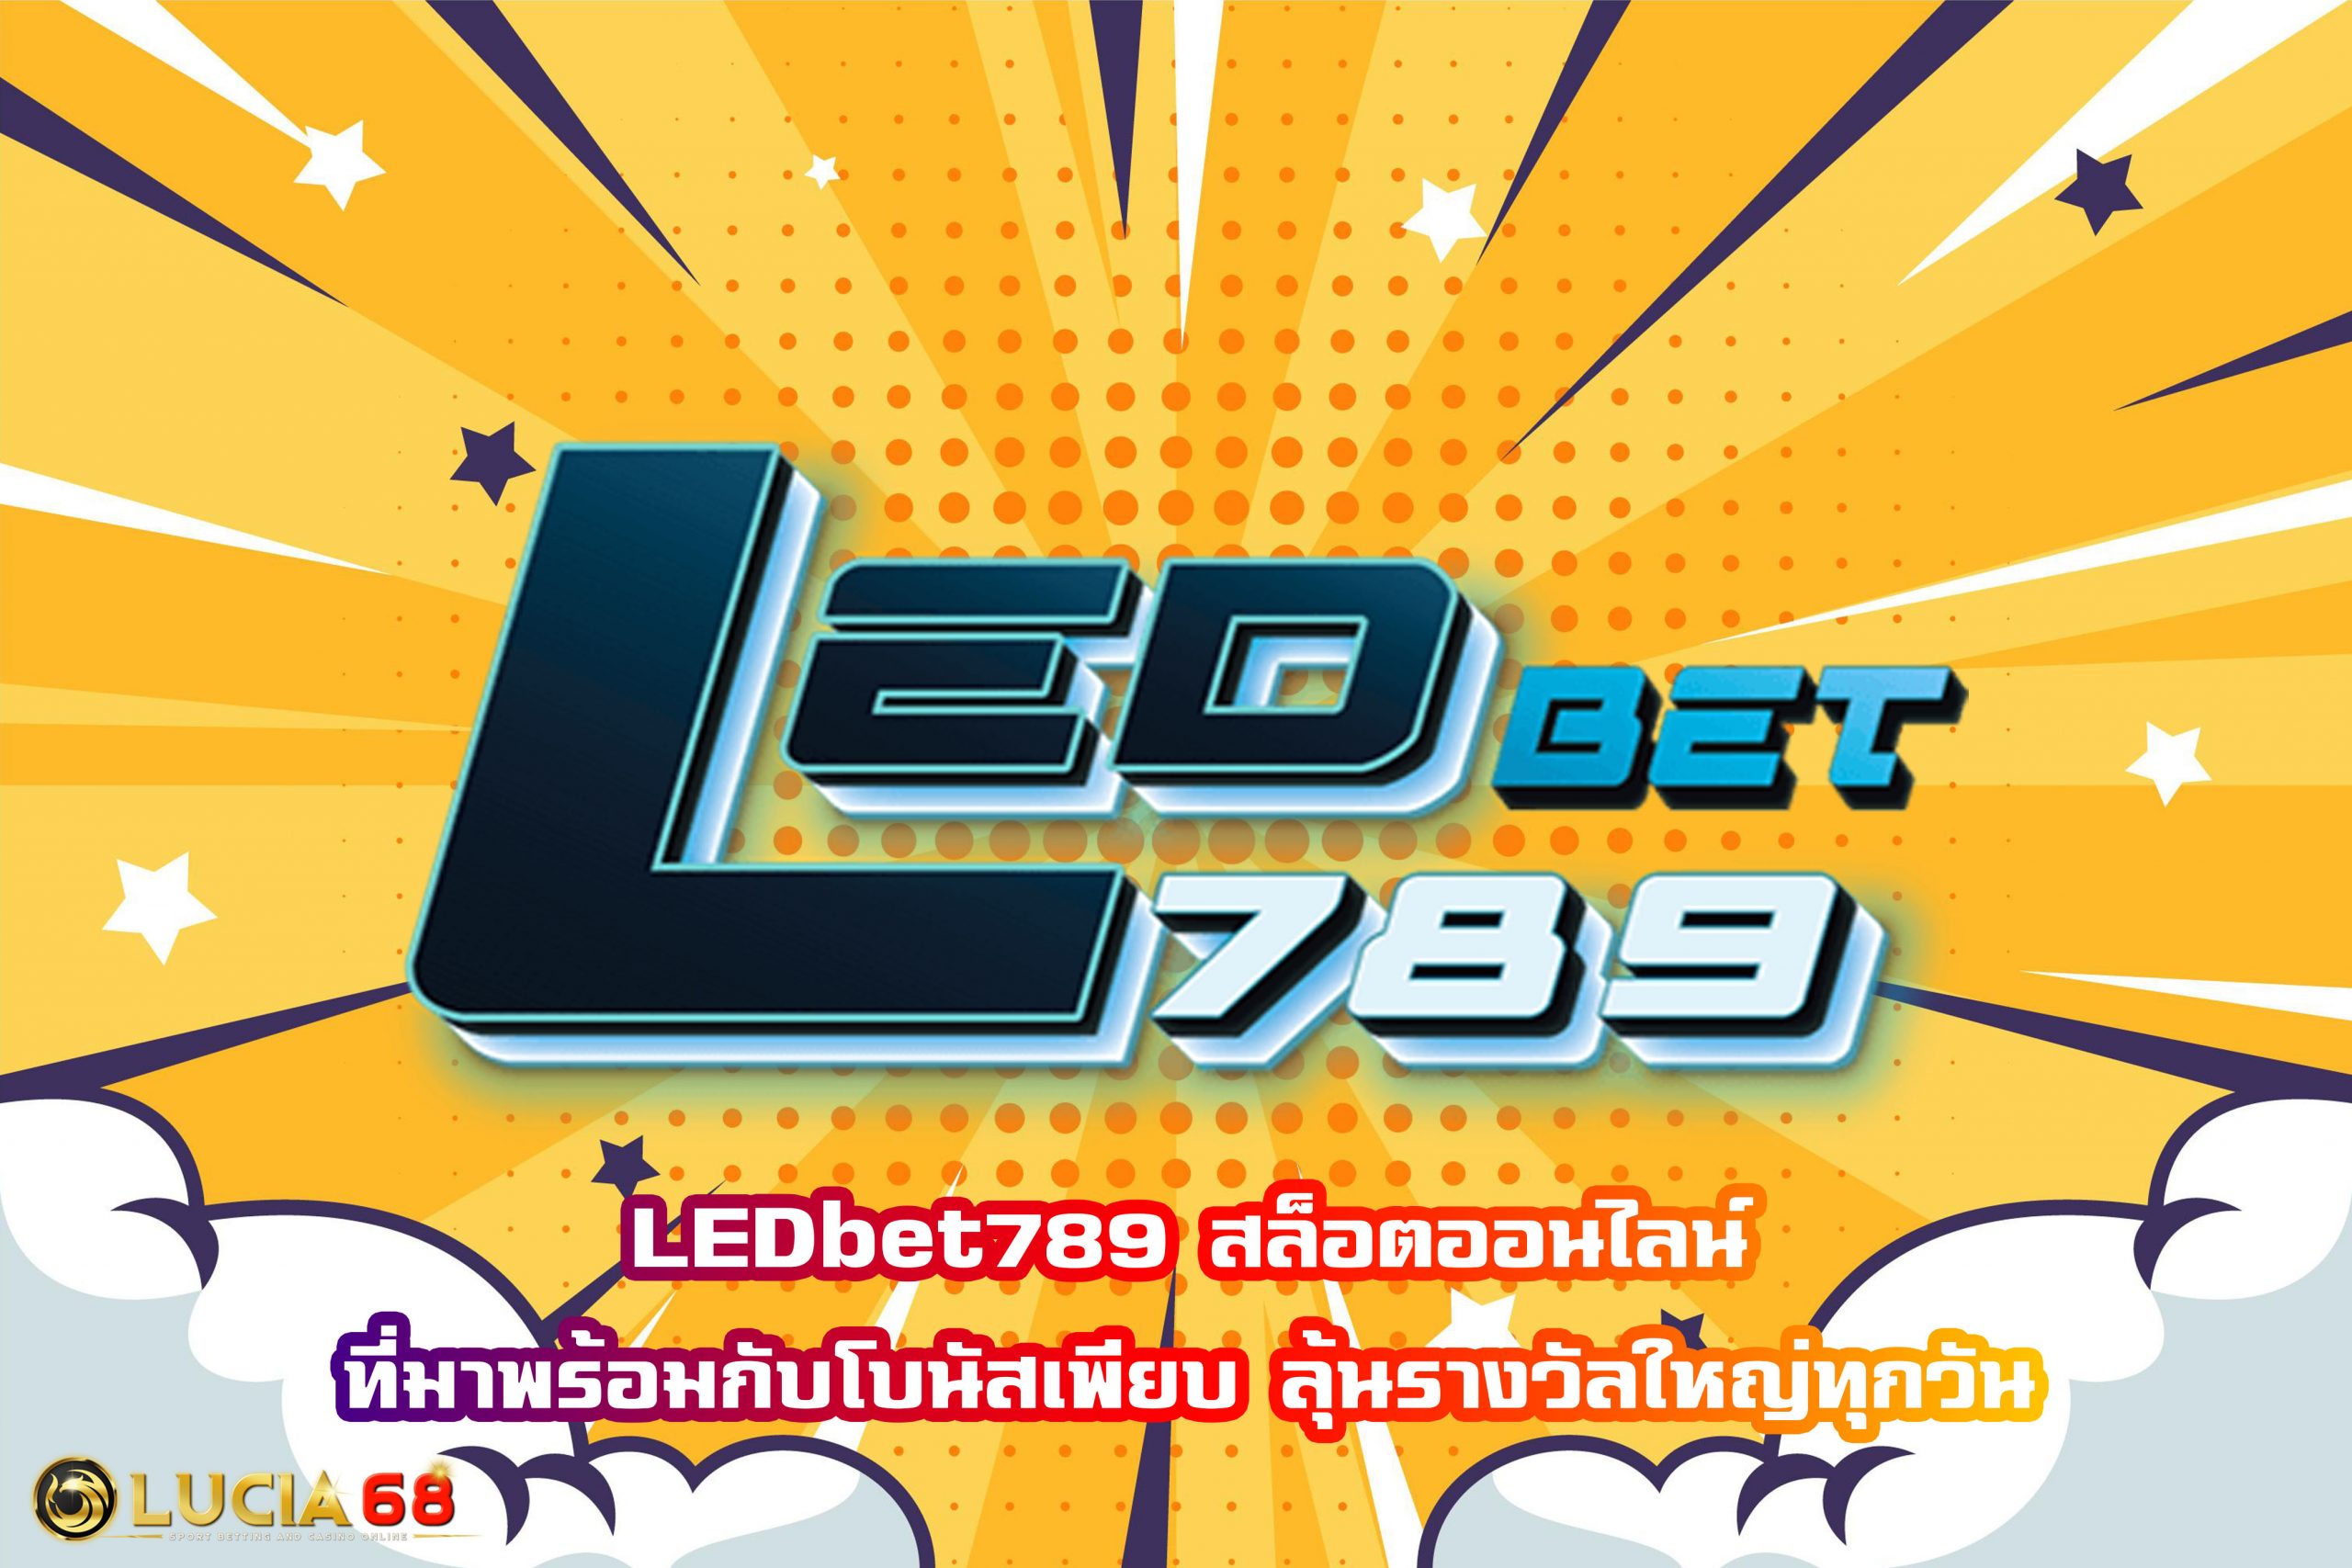 LEDbet789 สล็อตออนไลน์ที่มาพร้อมกับโบนัสเพียบ ลุ้นรางวัลใหญ่ทุกวัน